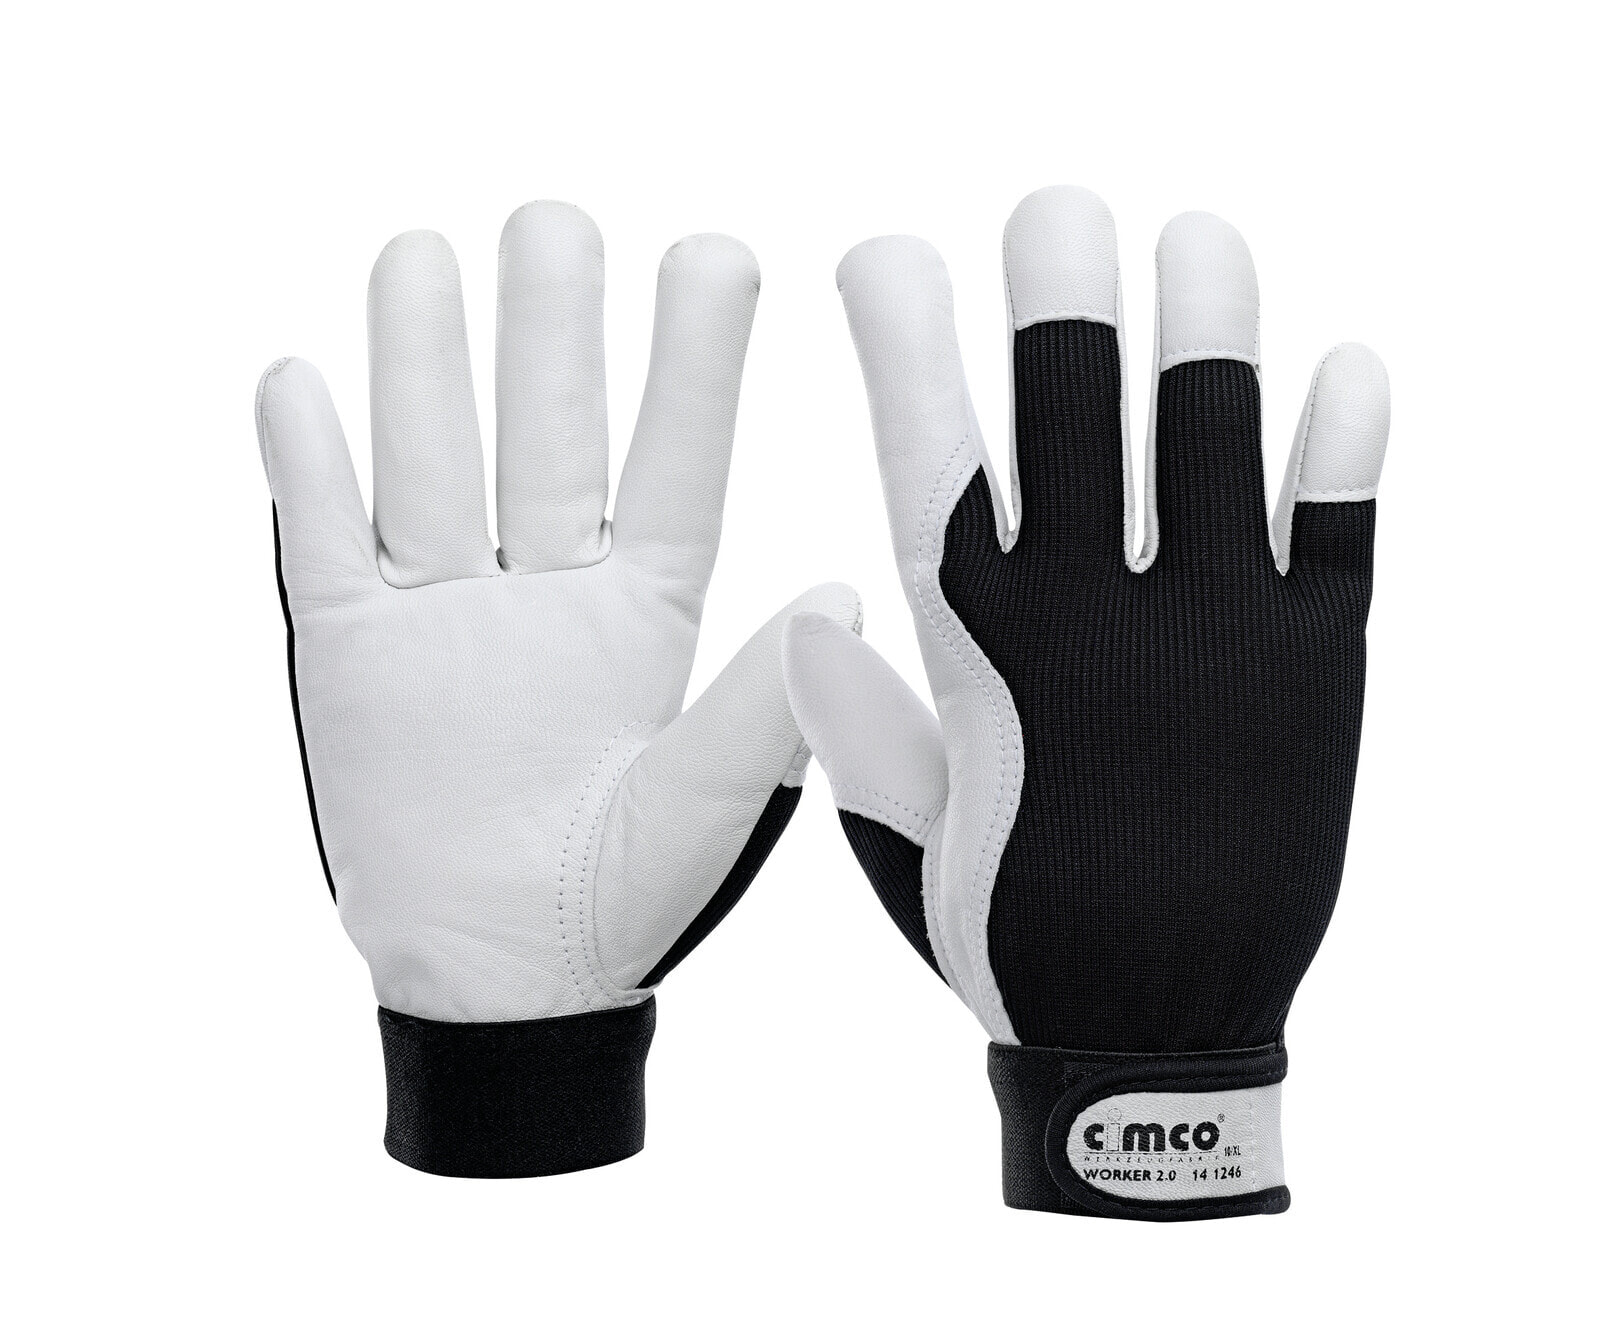 141246 - Workshop gloves - Black - White - XL - EUE - Adult - Unisex